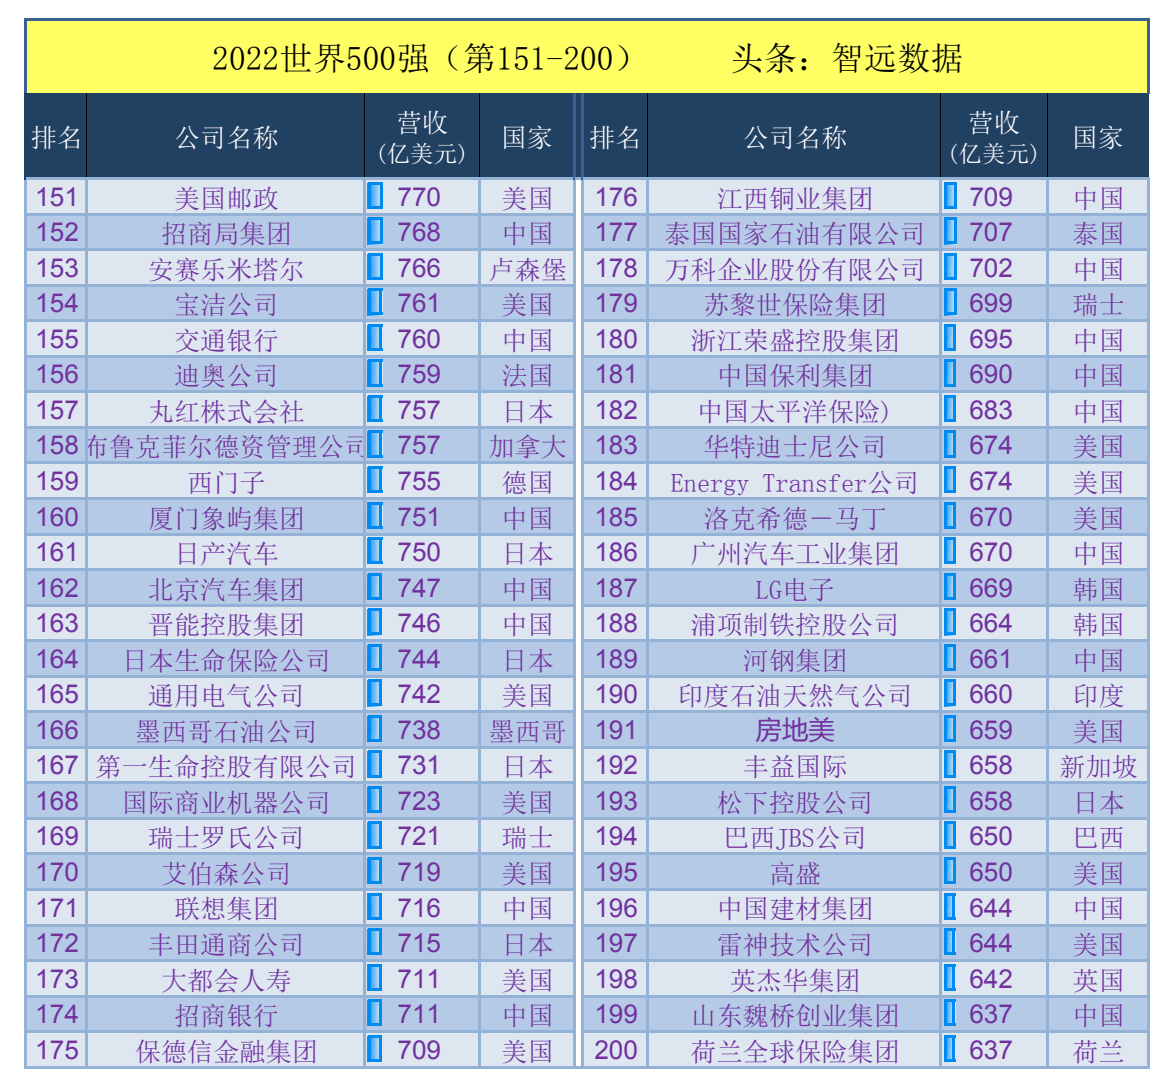 世界五百强中国企业名单（最新中国企业500强名单）